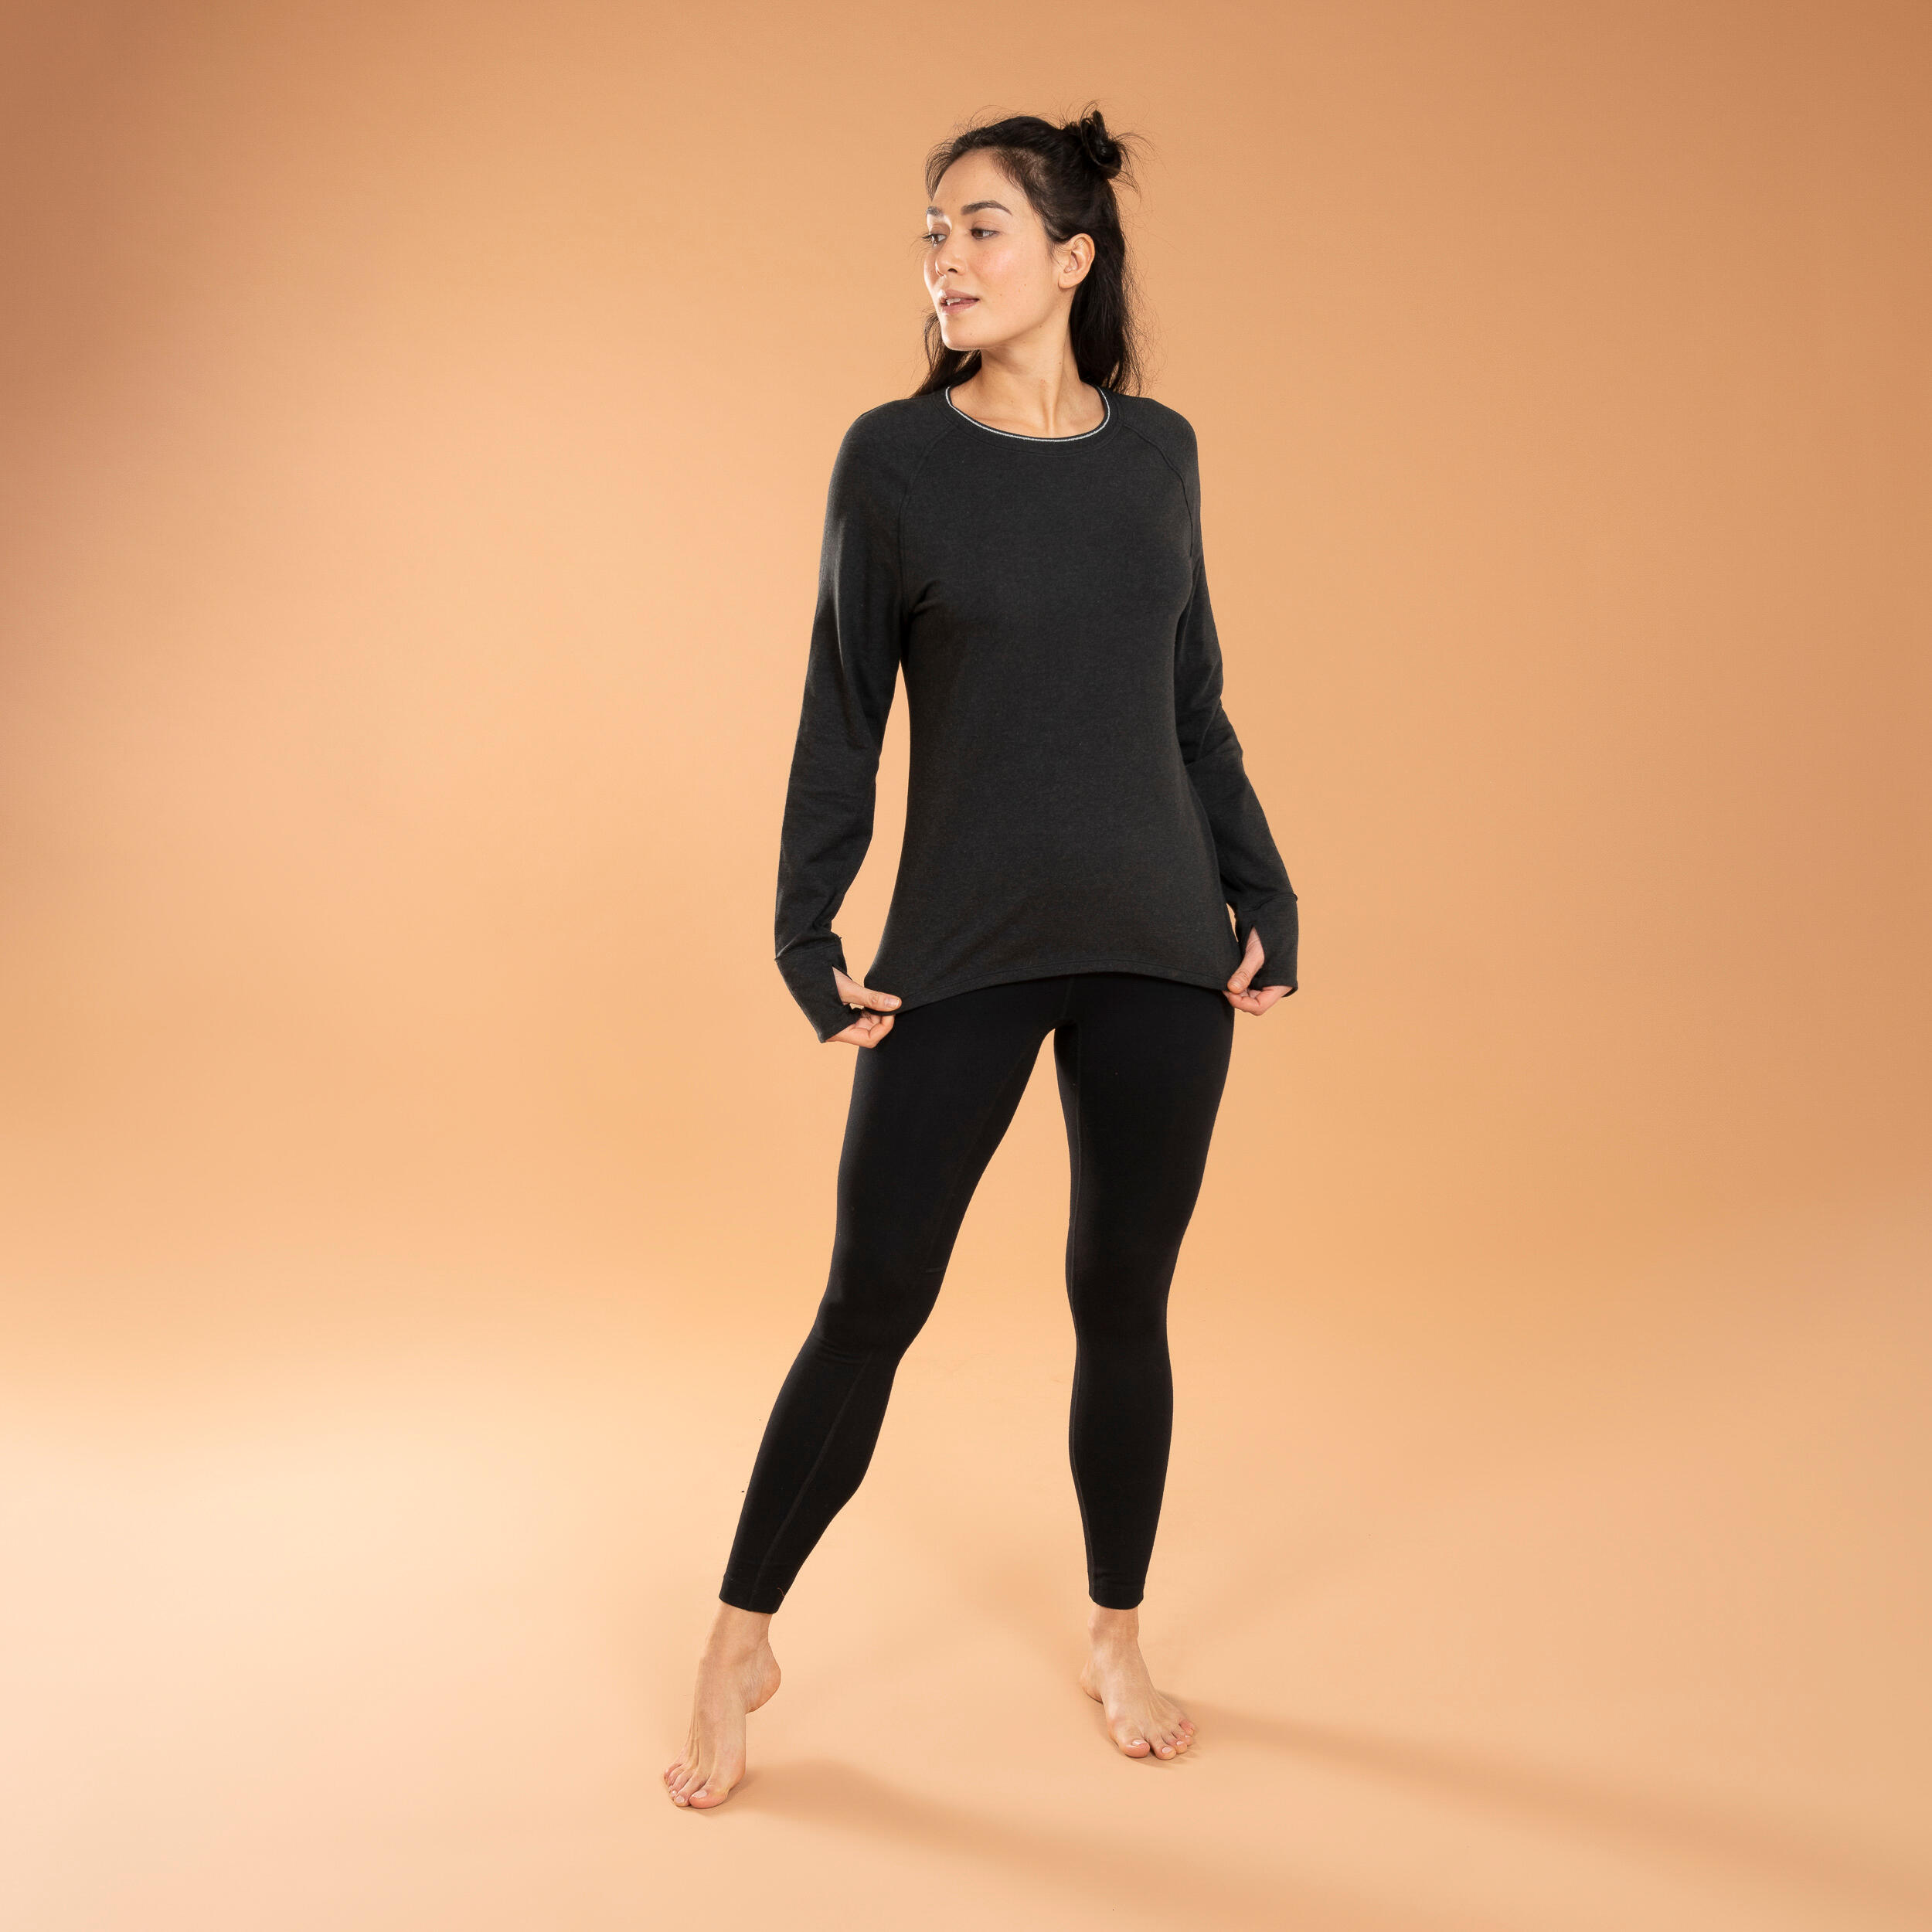 Women's Long-Sleeved Yoga T-Shirt - Black 3/5